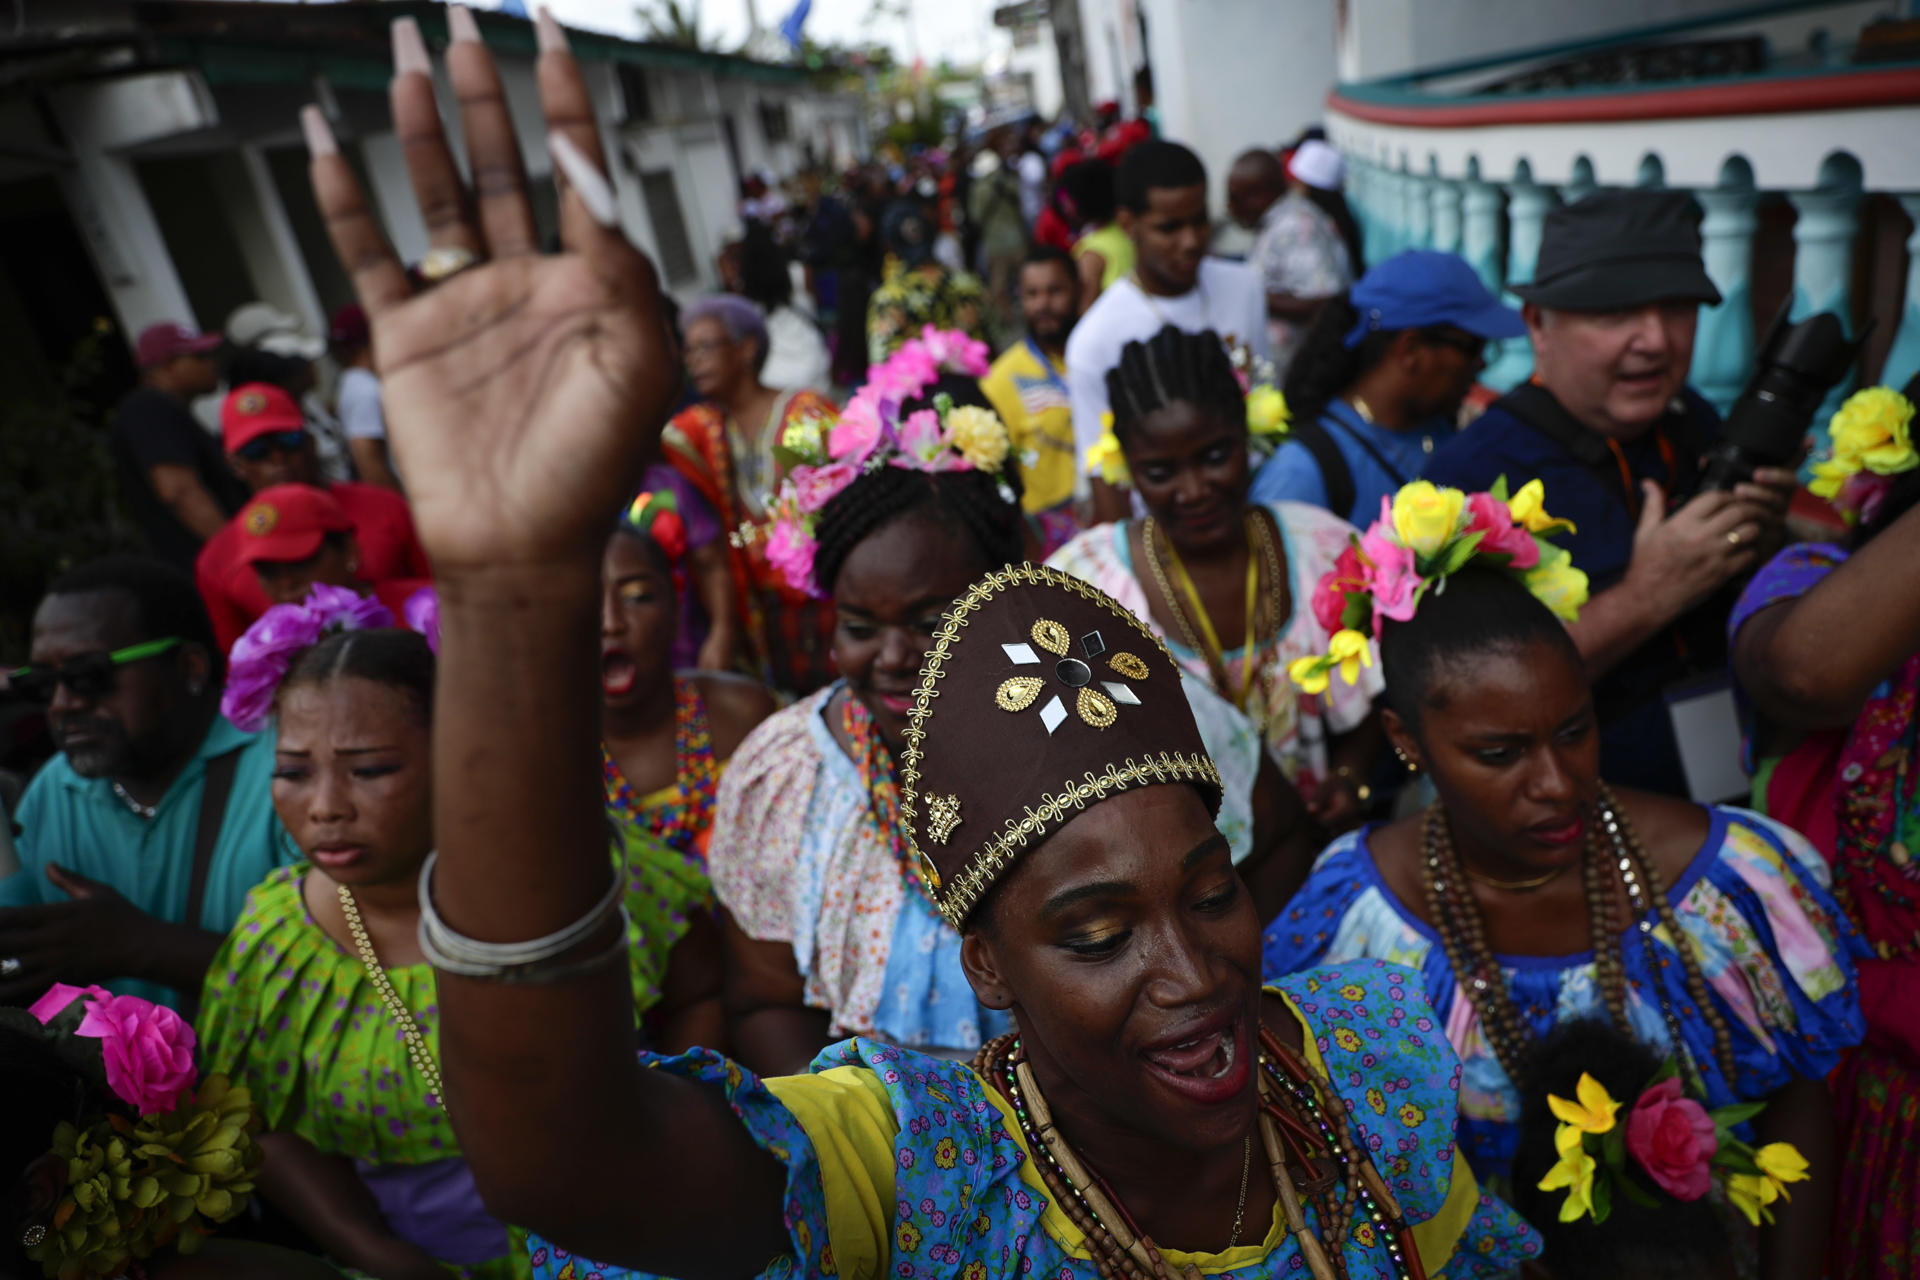 Festival de la Pollera Congo revive la época de los esclavos africanos